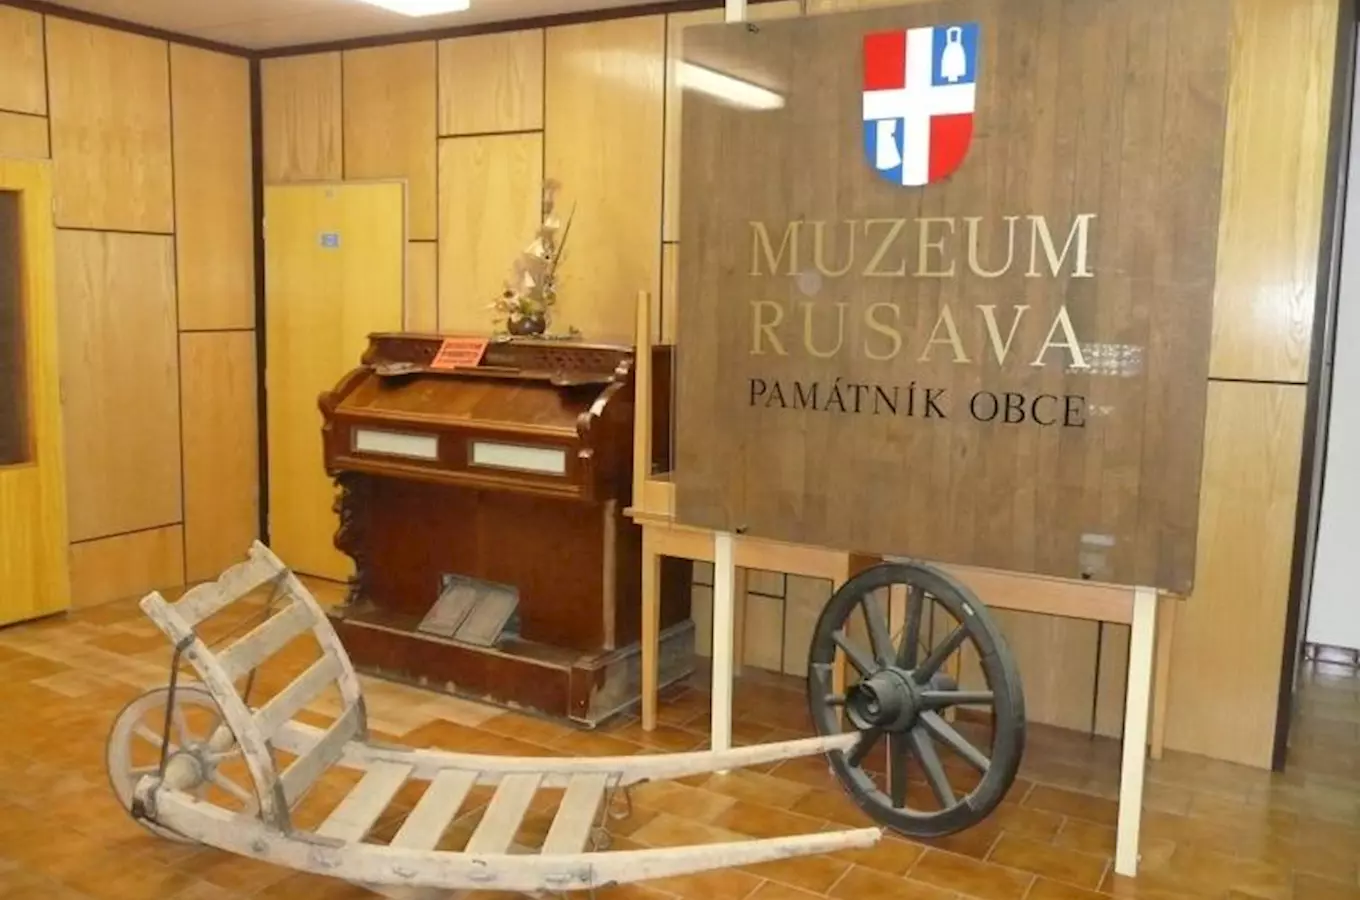 Muzeum Rusava – Památník obce